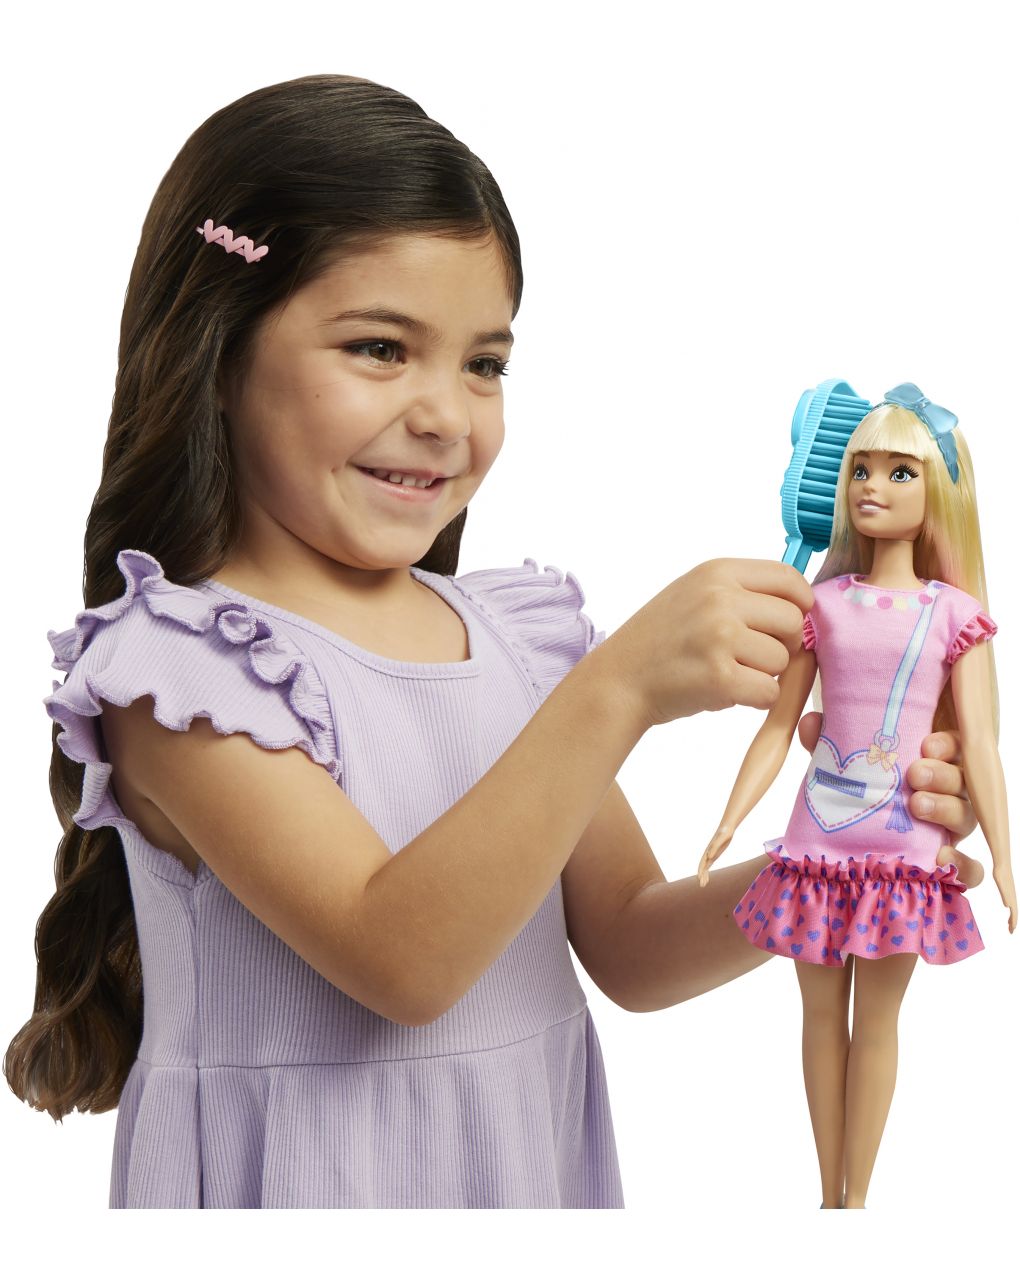 A minha primeira barbie - barbie - Barbie